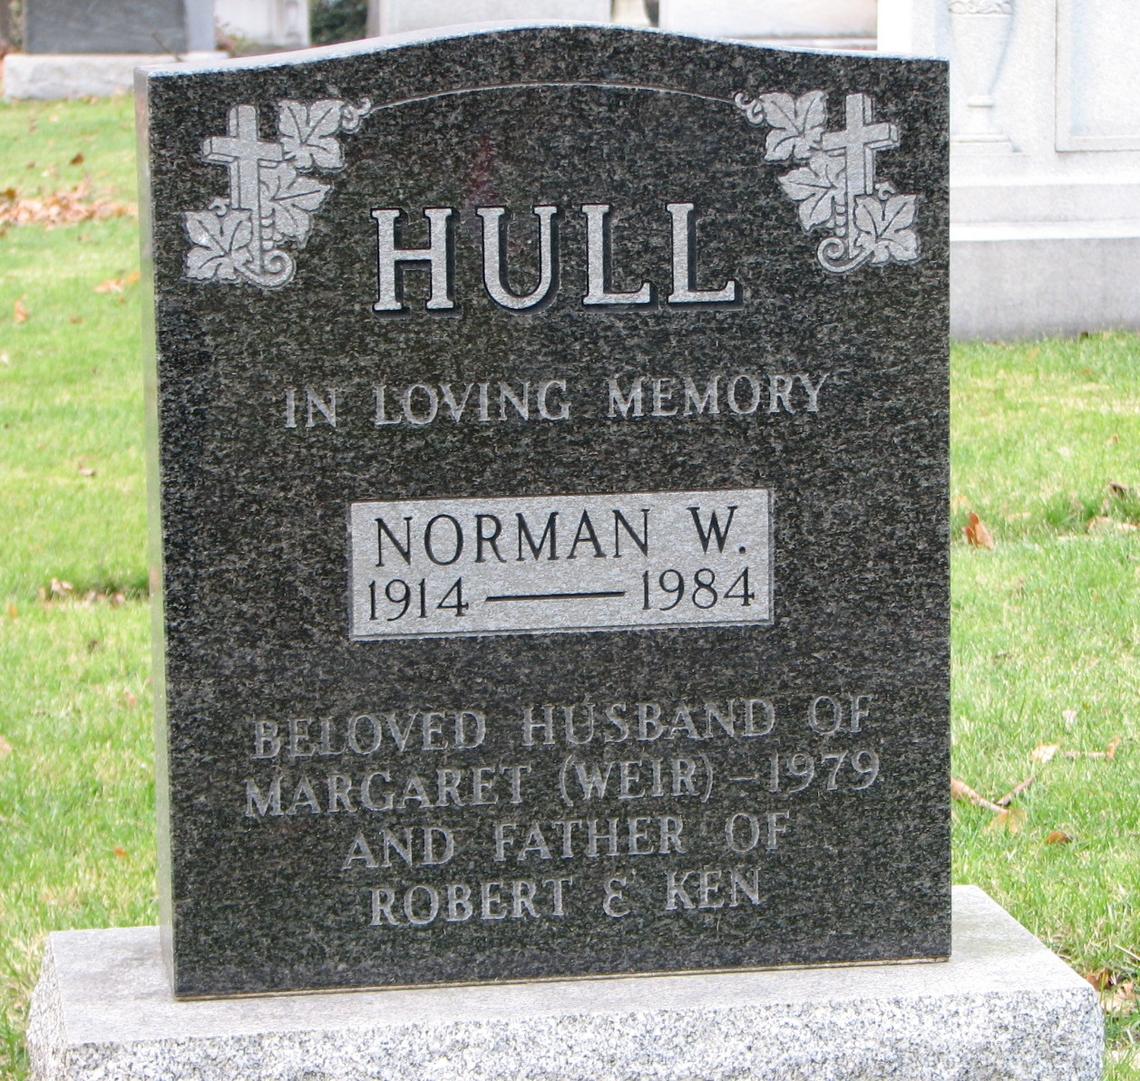 Norman W. HULL 1914-1984_Spouse Margaret WEIR 1979_ Robert & Ken